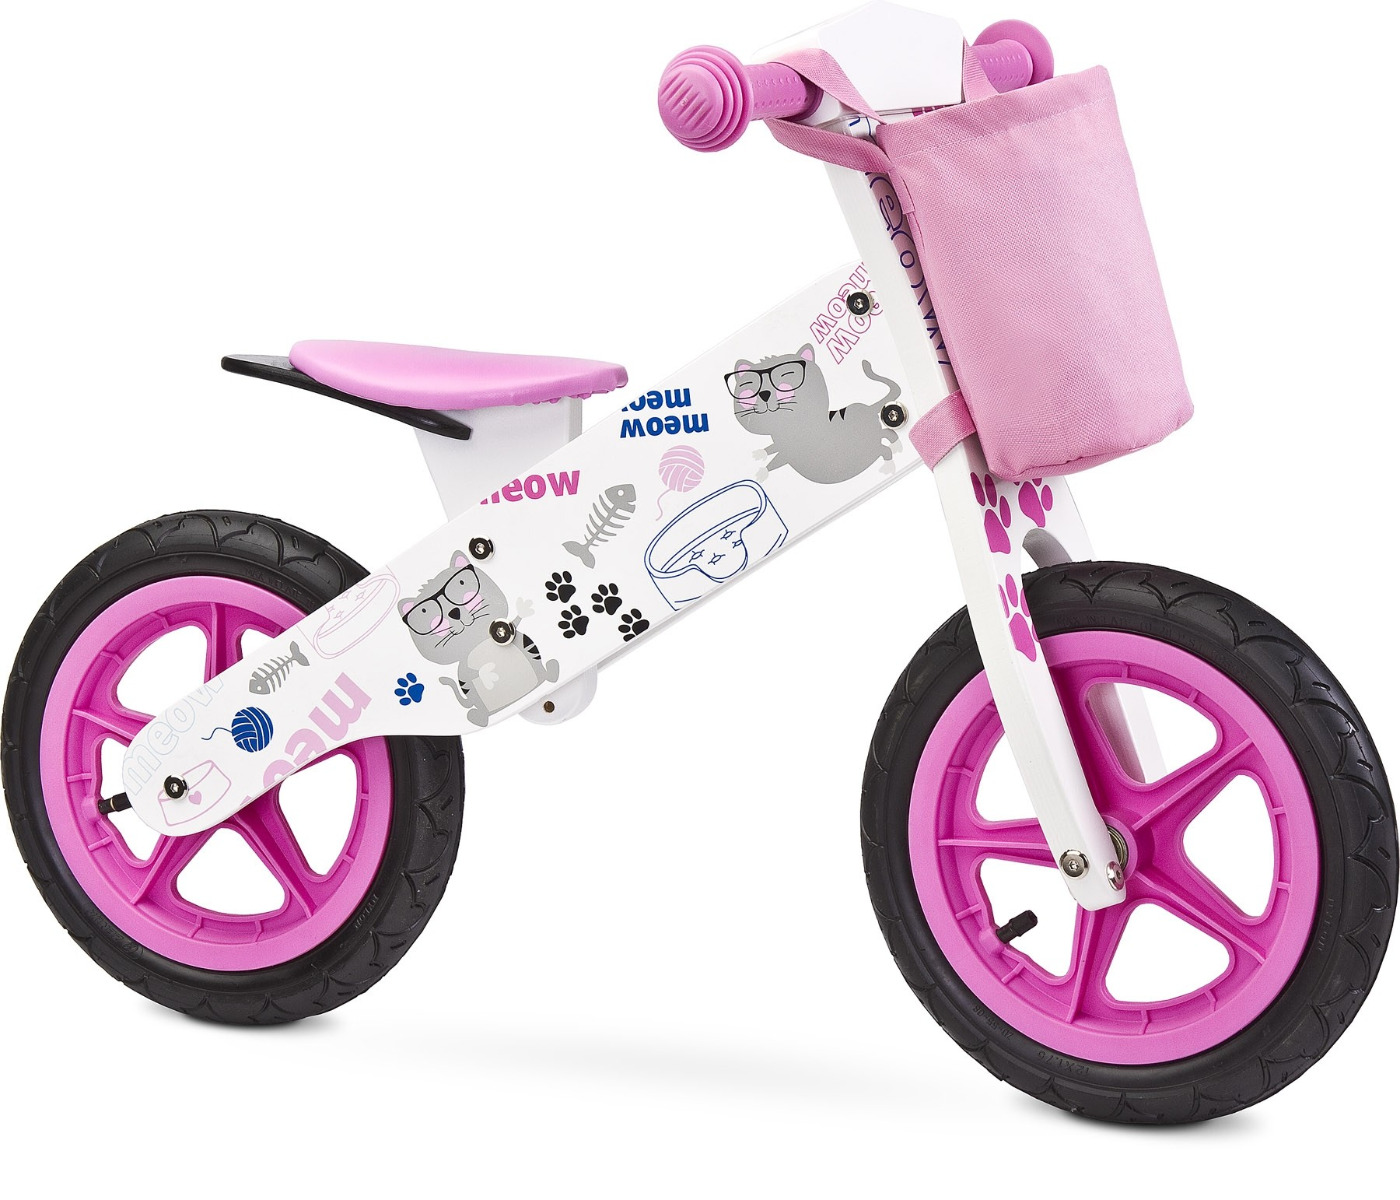 Bicicleta fara pedale Toyz ZAP Pink